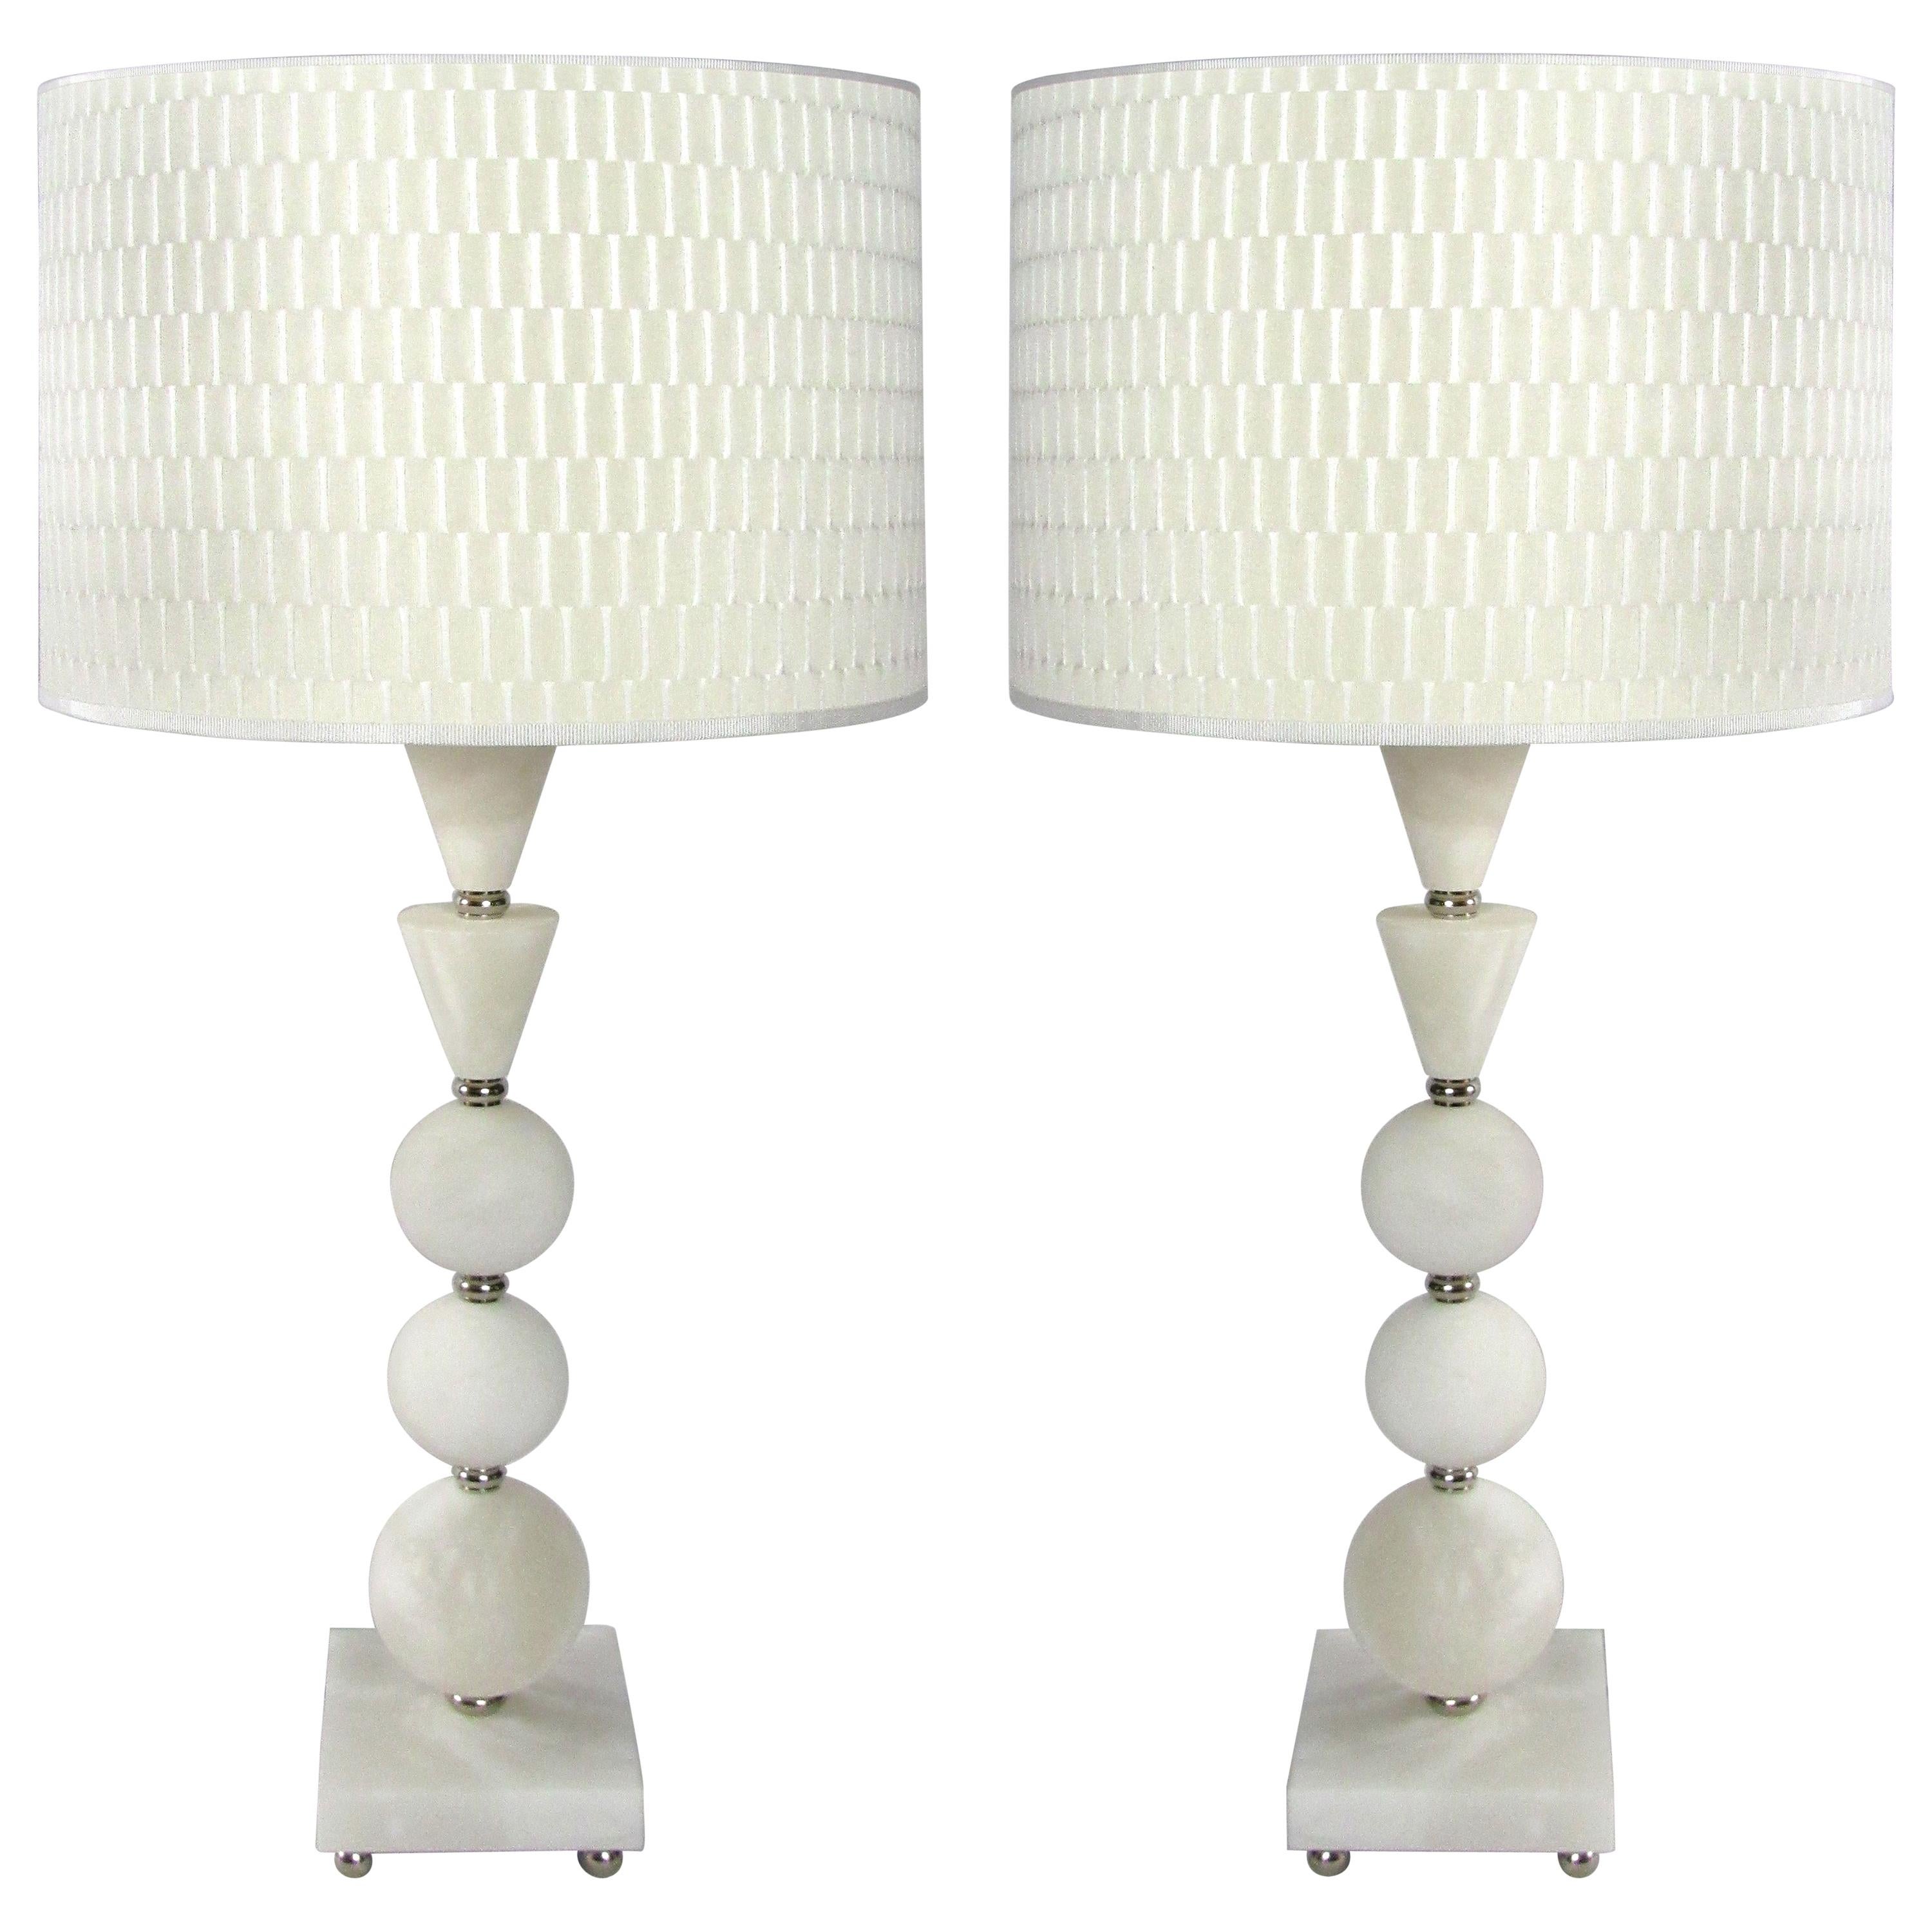 Laudarte Srl Leo Marai Alba lampe de table en marbre par Attilio Amato

Nous vous proposons une lampe de table 